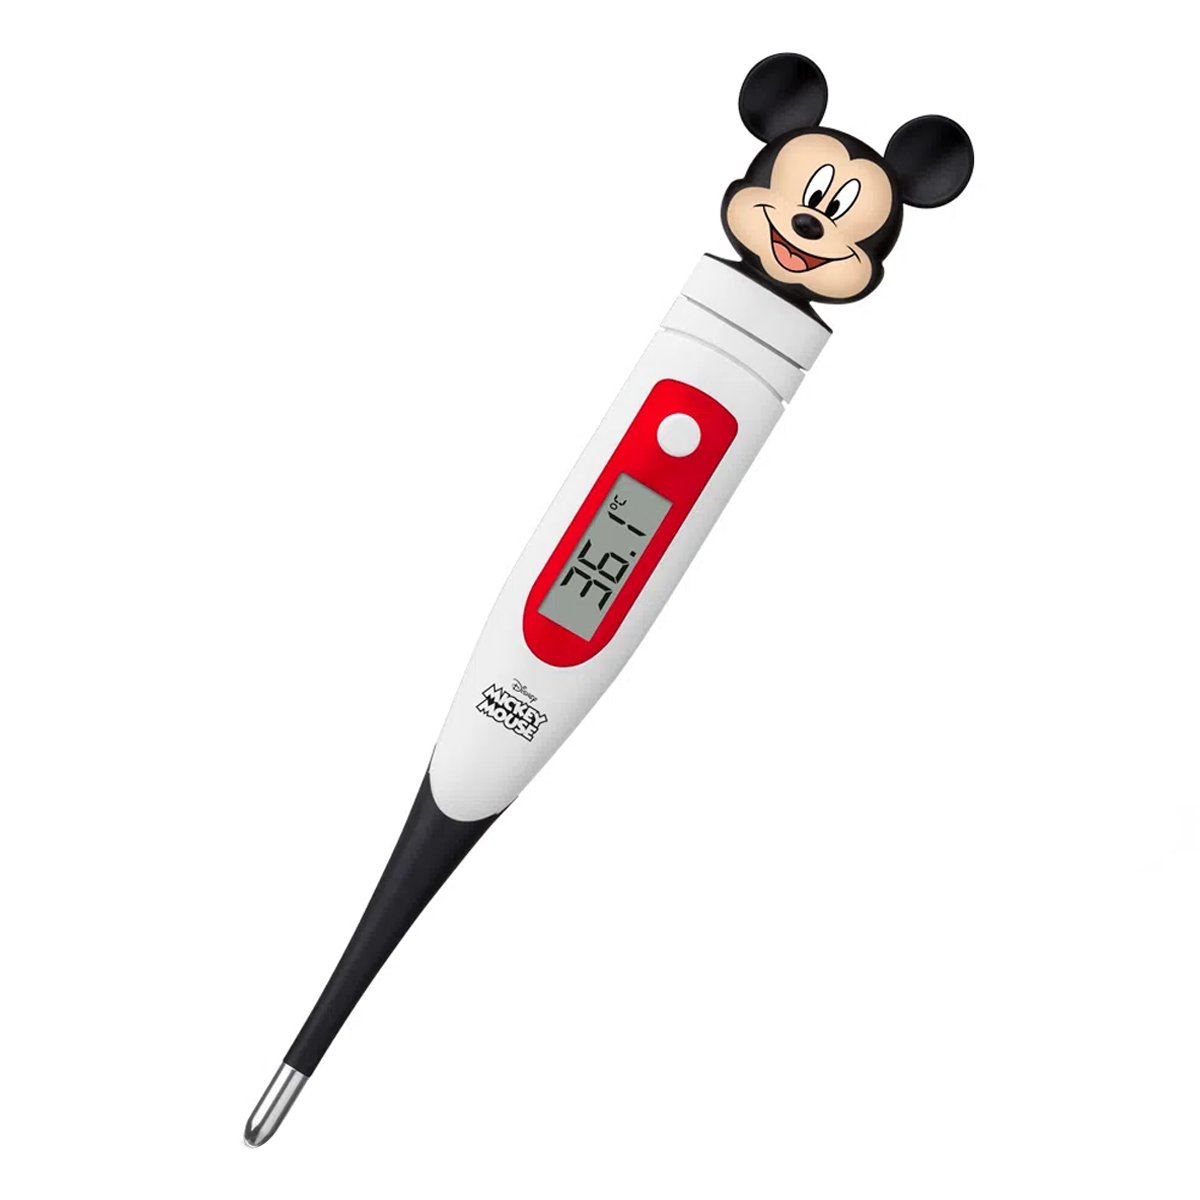 Termômetro Digital Infantil Para Medir Febre Rápido Ponta Flexível Mickey Mouse Multikids Baby Termô - 1